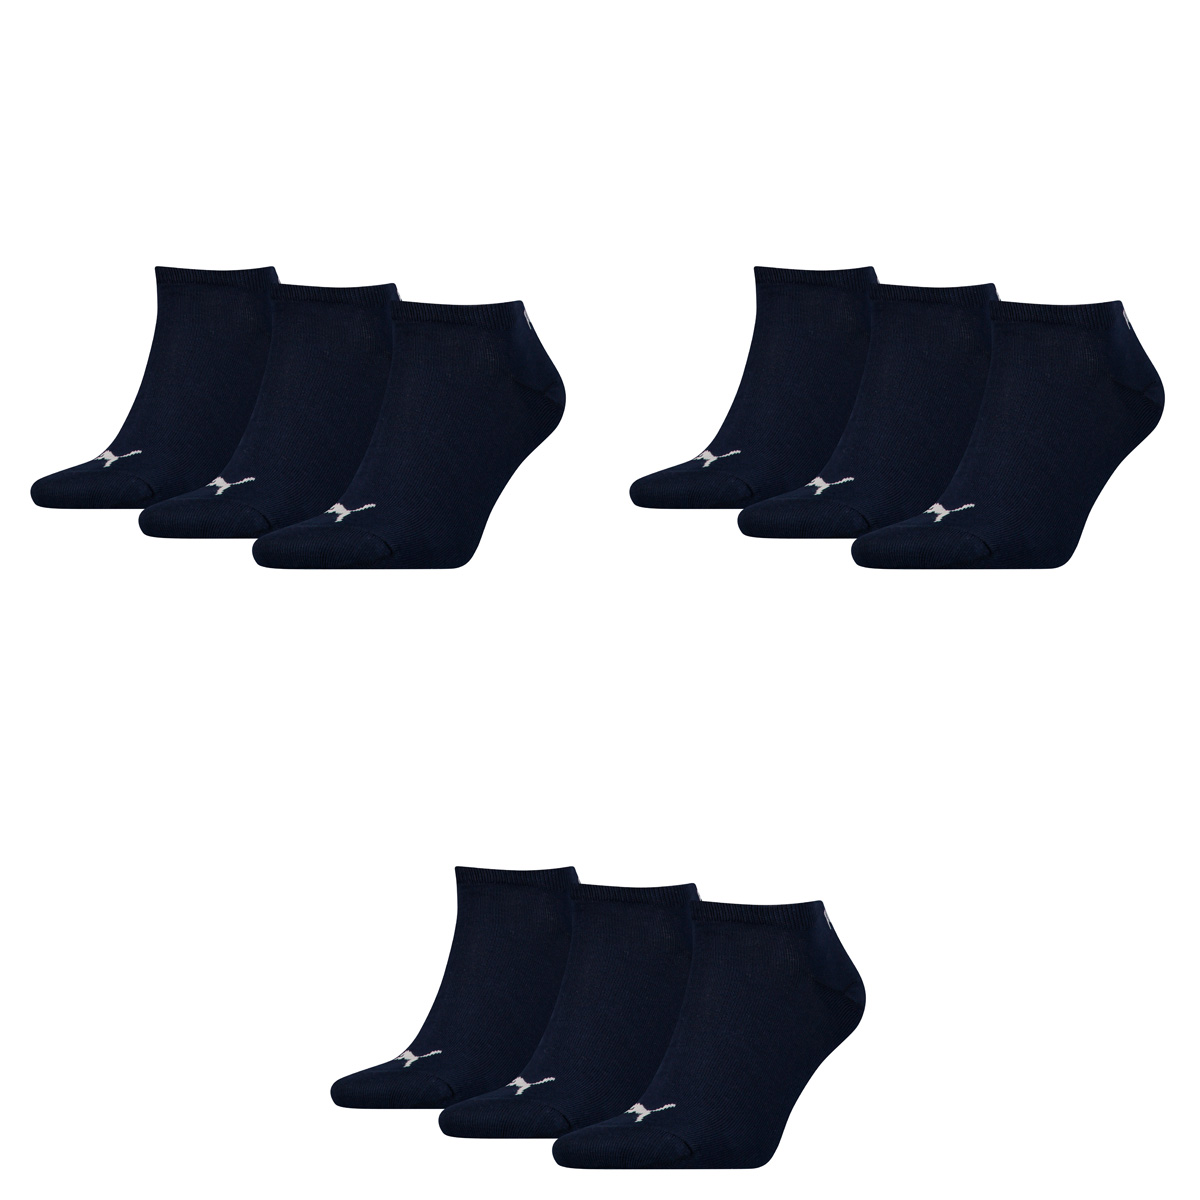 PUMA Herren UNISEX SNEAKER PLAIN 3P Socken, navy, 47-49 (3er Pack)